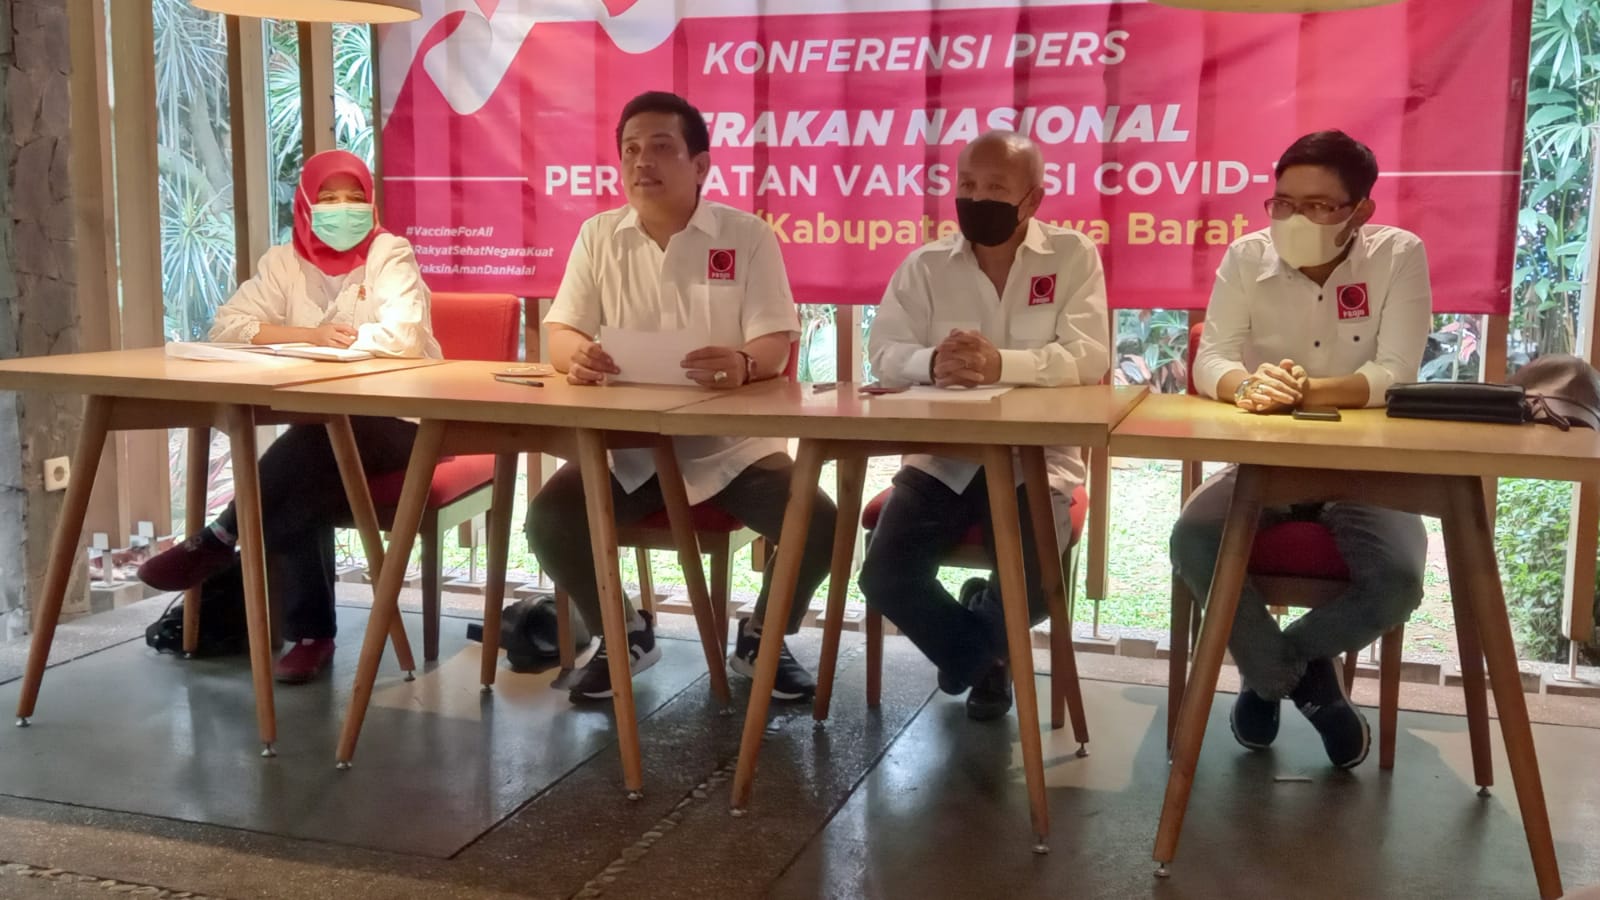 Jajaran penguru Projo ketika memberikan keterangan untuk pelaksanaan percepatan vaksinissi di Jawa Barat